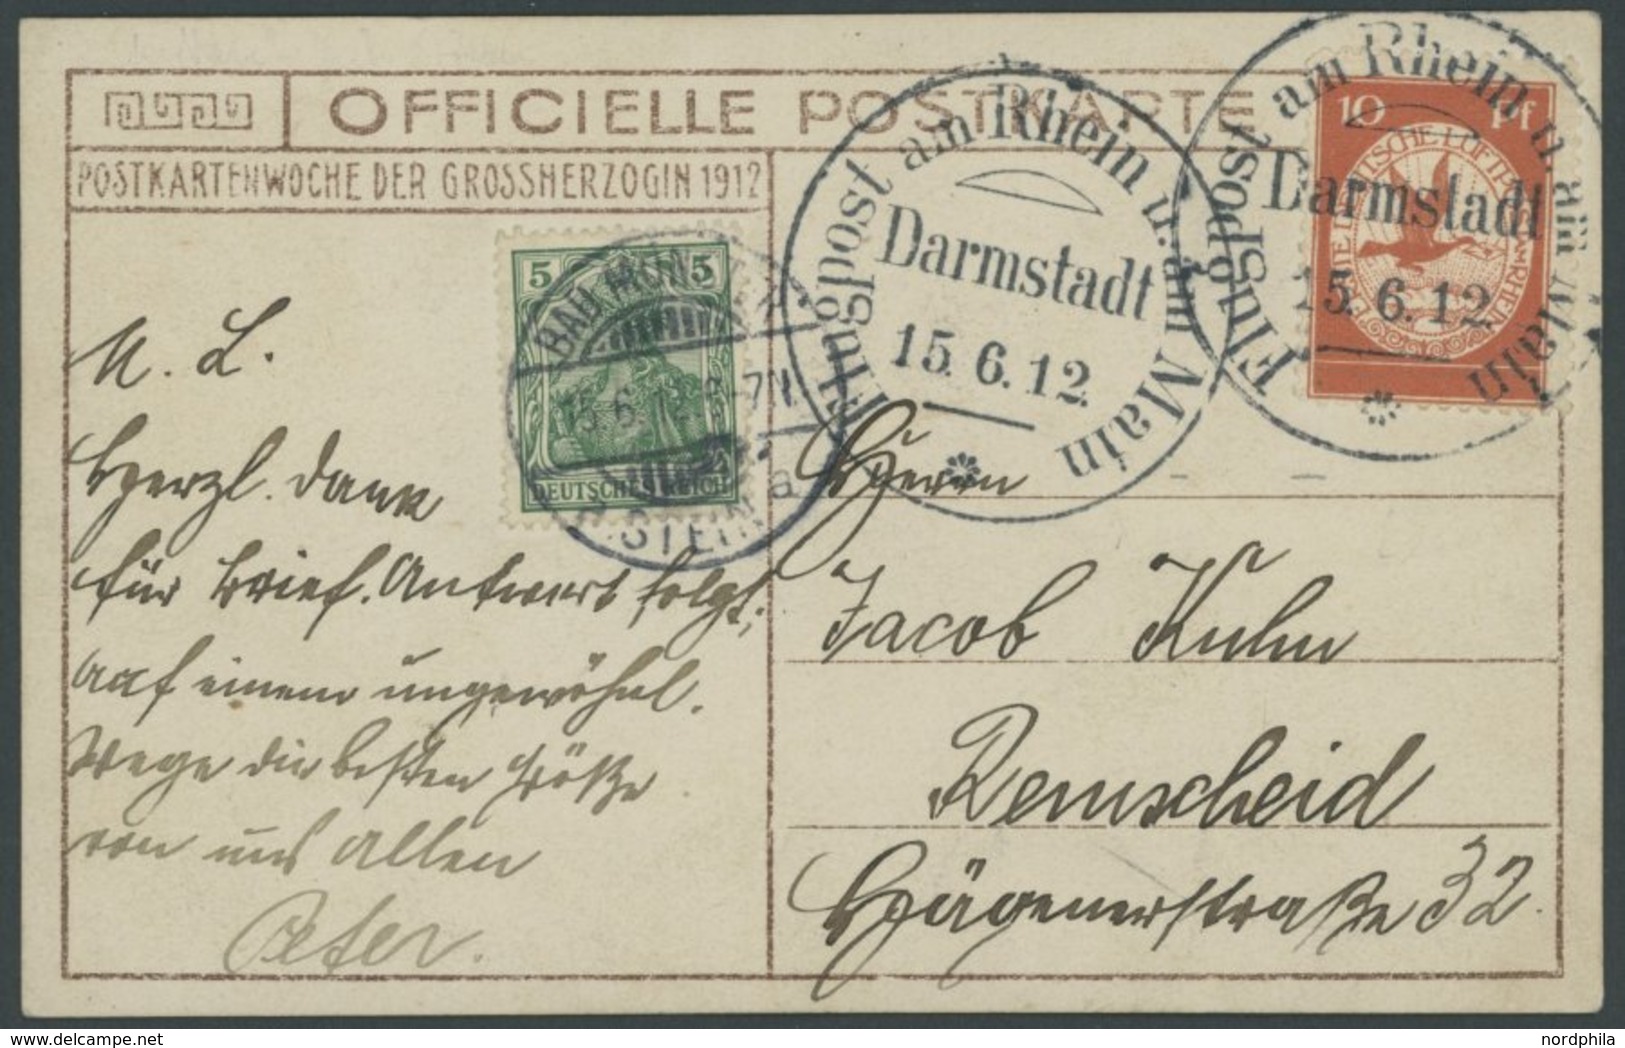 1912, 10 Pf. Flp. Am Rhein Und Main Auf Flugpostkarte (Großherzogliche Familie) Mit 5 Pf. Zusatzfrankatur, Sonderstempel - Airmail & Zeppelin